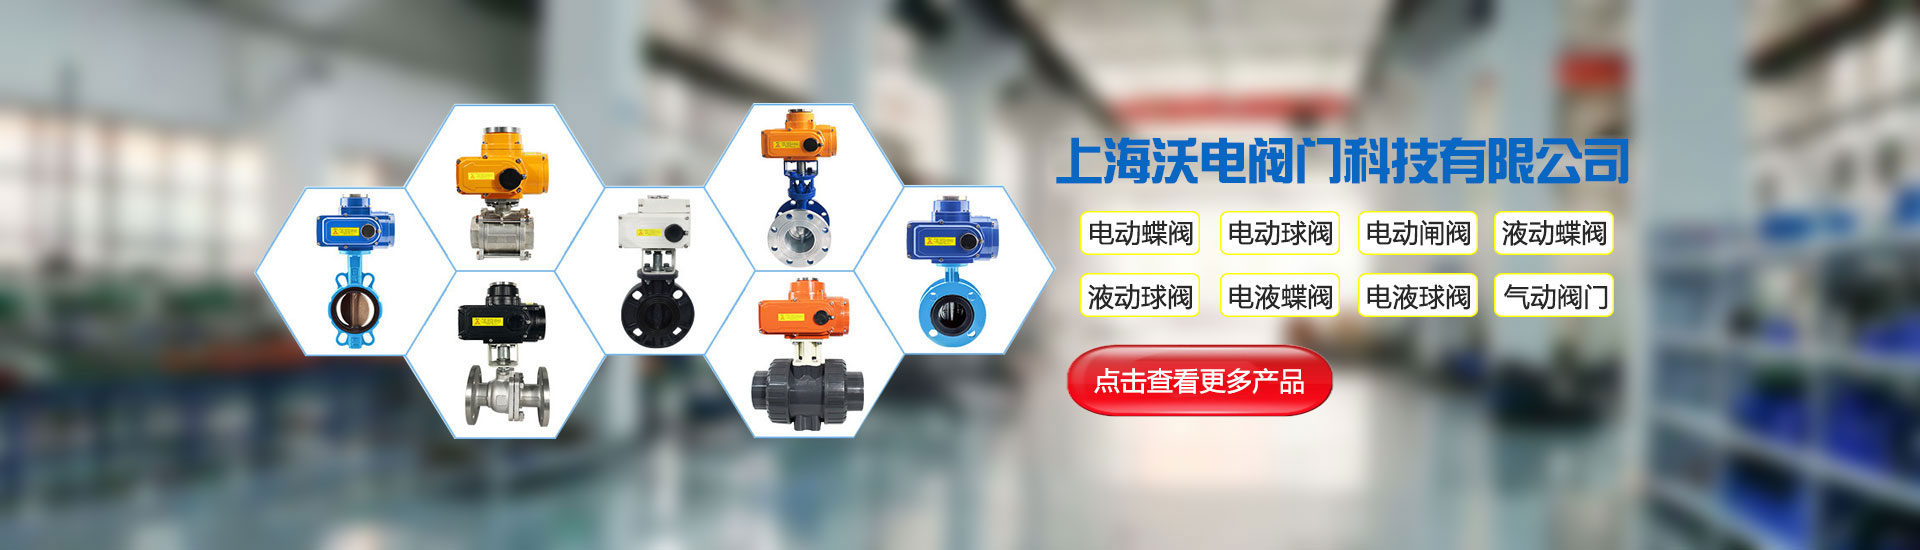 电液执行器厂家-上海沃电自动化仪表有限公